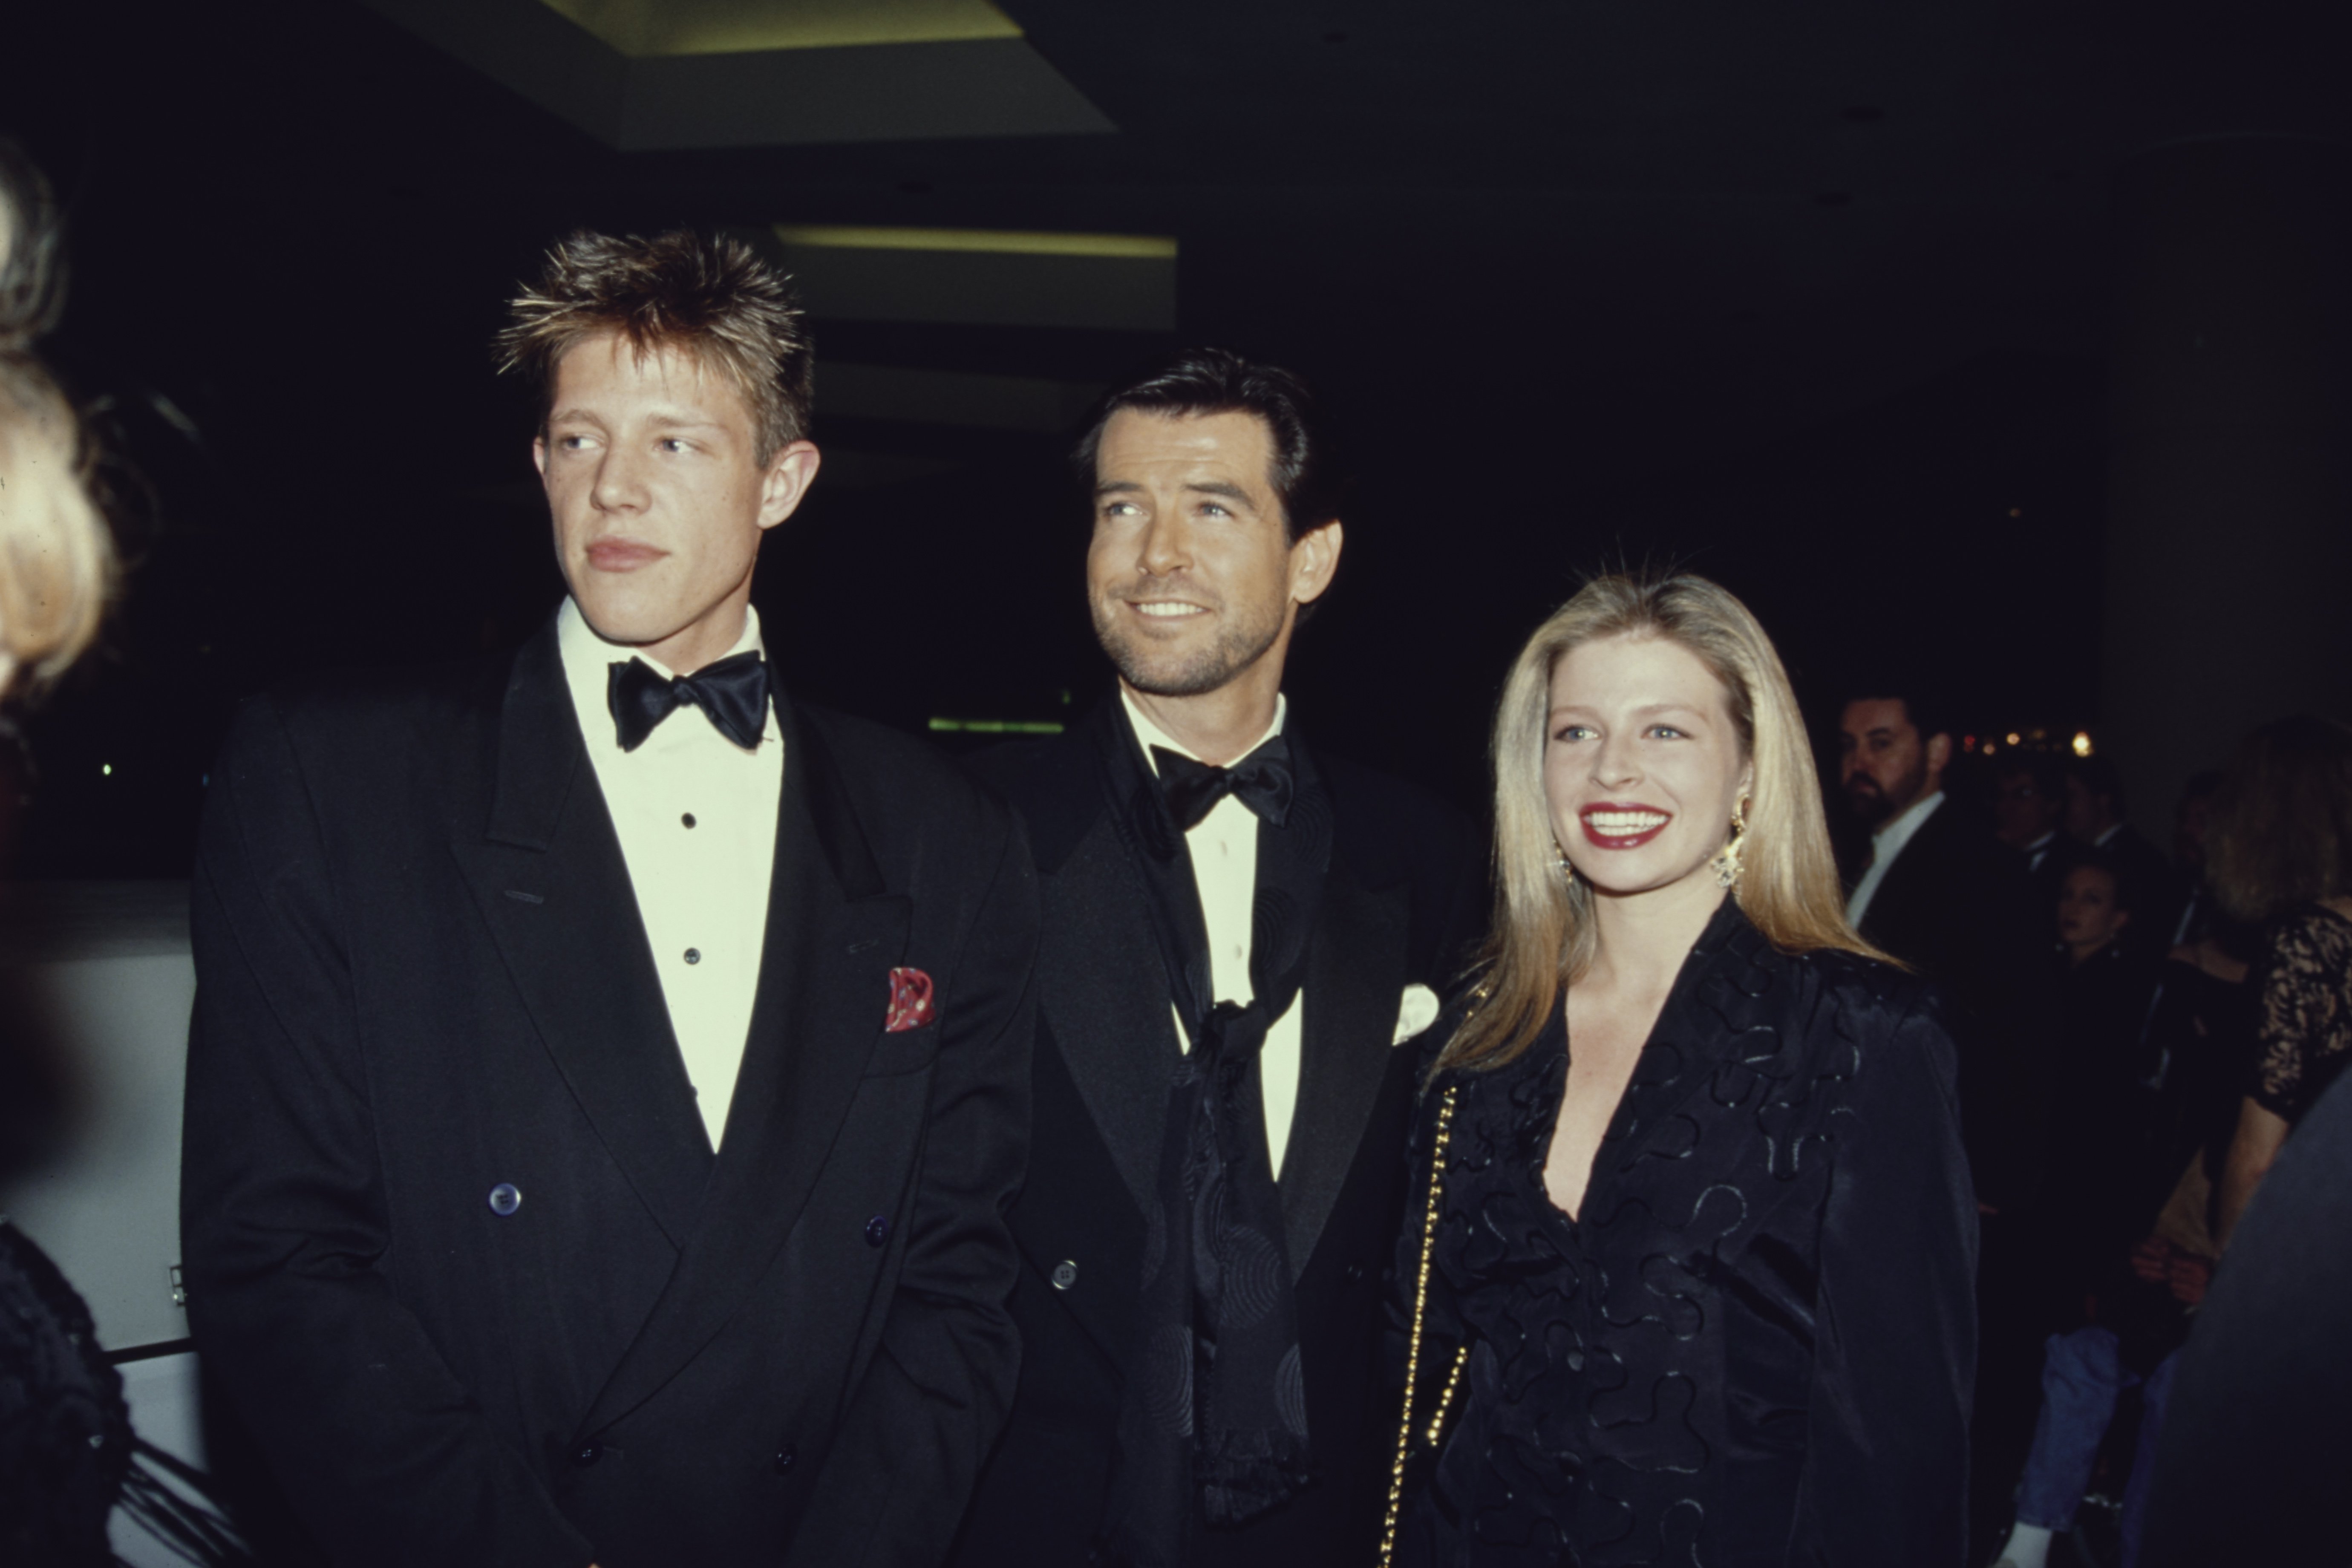 El actor irlandés Pierce Brosnan con sus hijos adoptivos Christopher Harris y Charlotte Harris, en el Beverly Hilton Hotel en Beverly Hills, California, el 18 de enero de 1992. | Foto: Getty Images